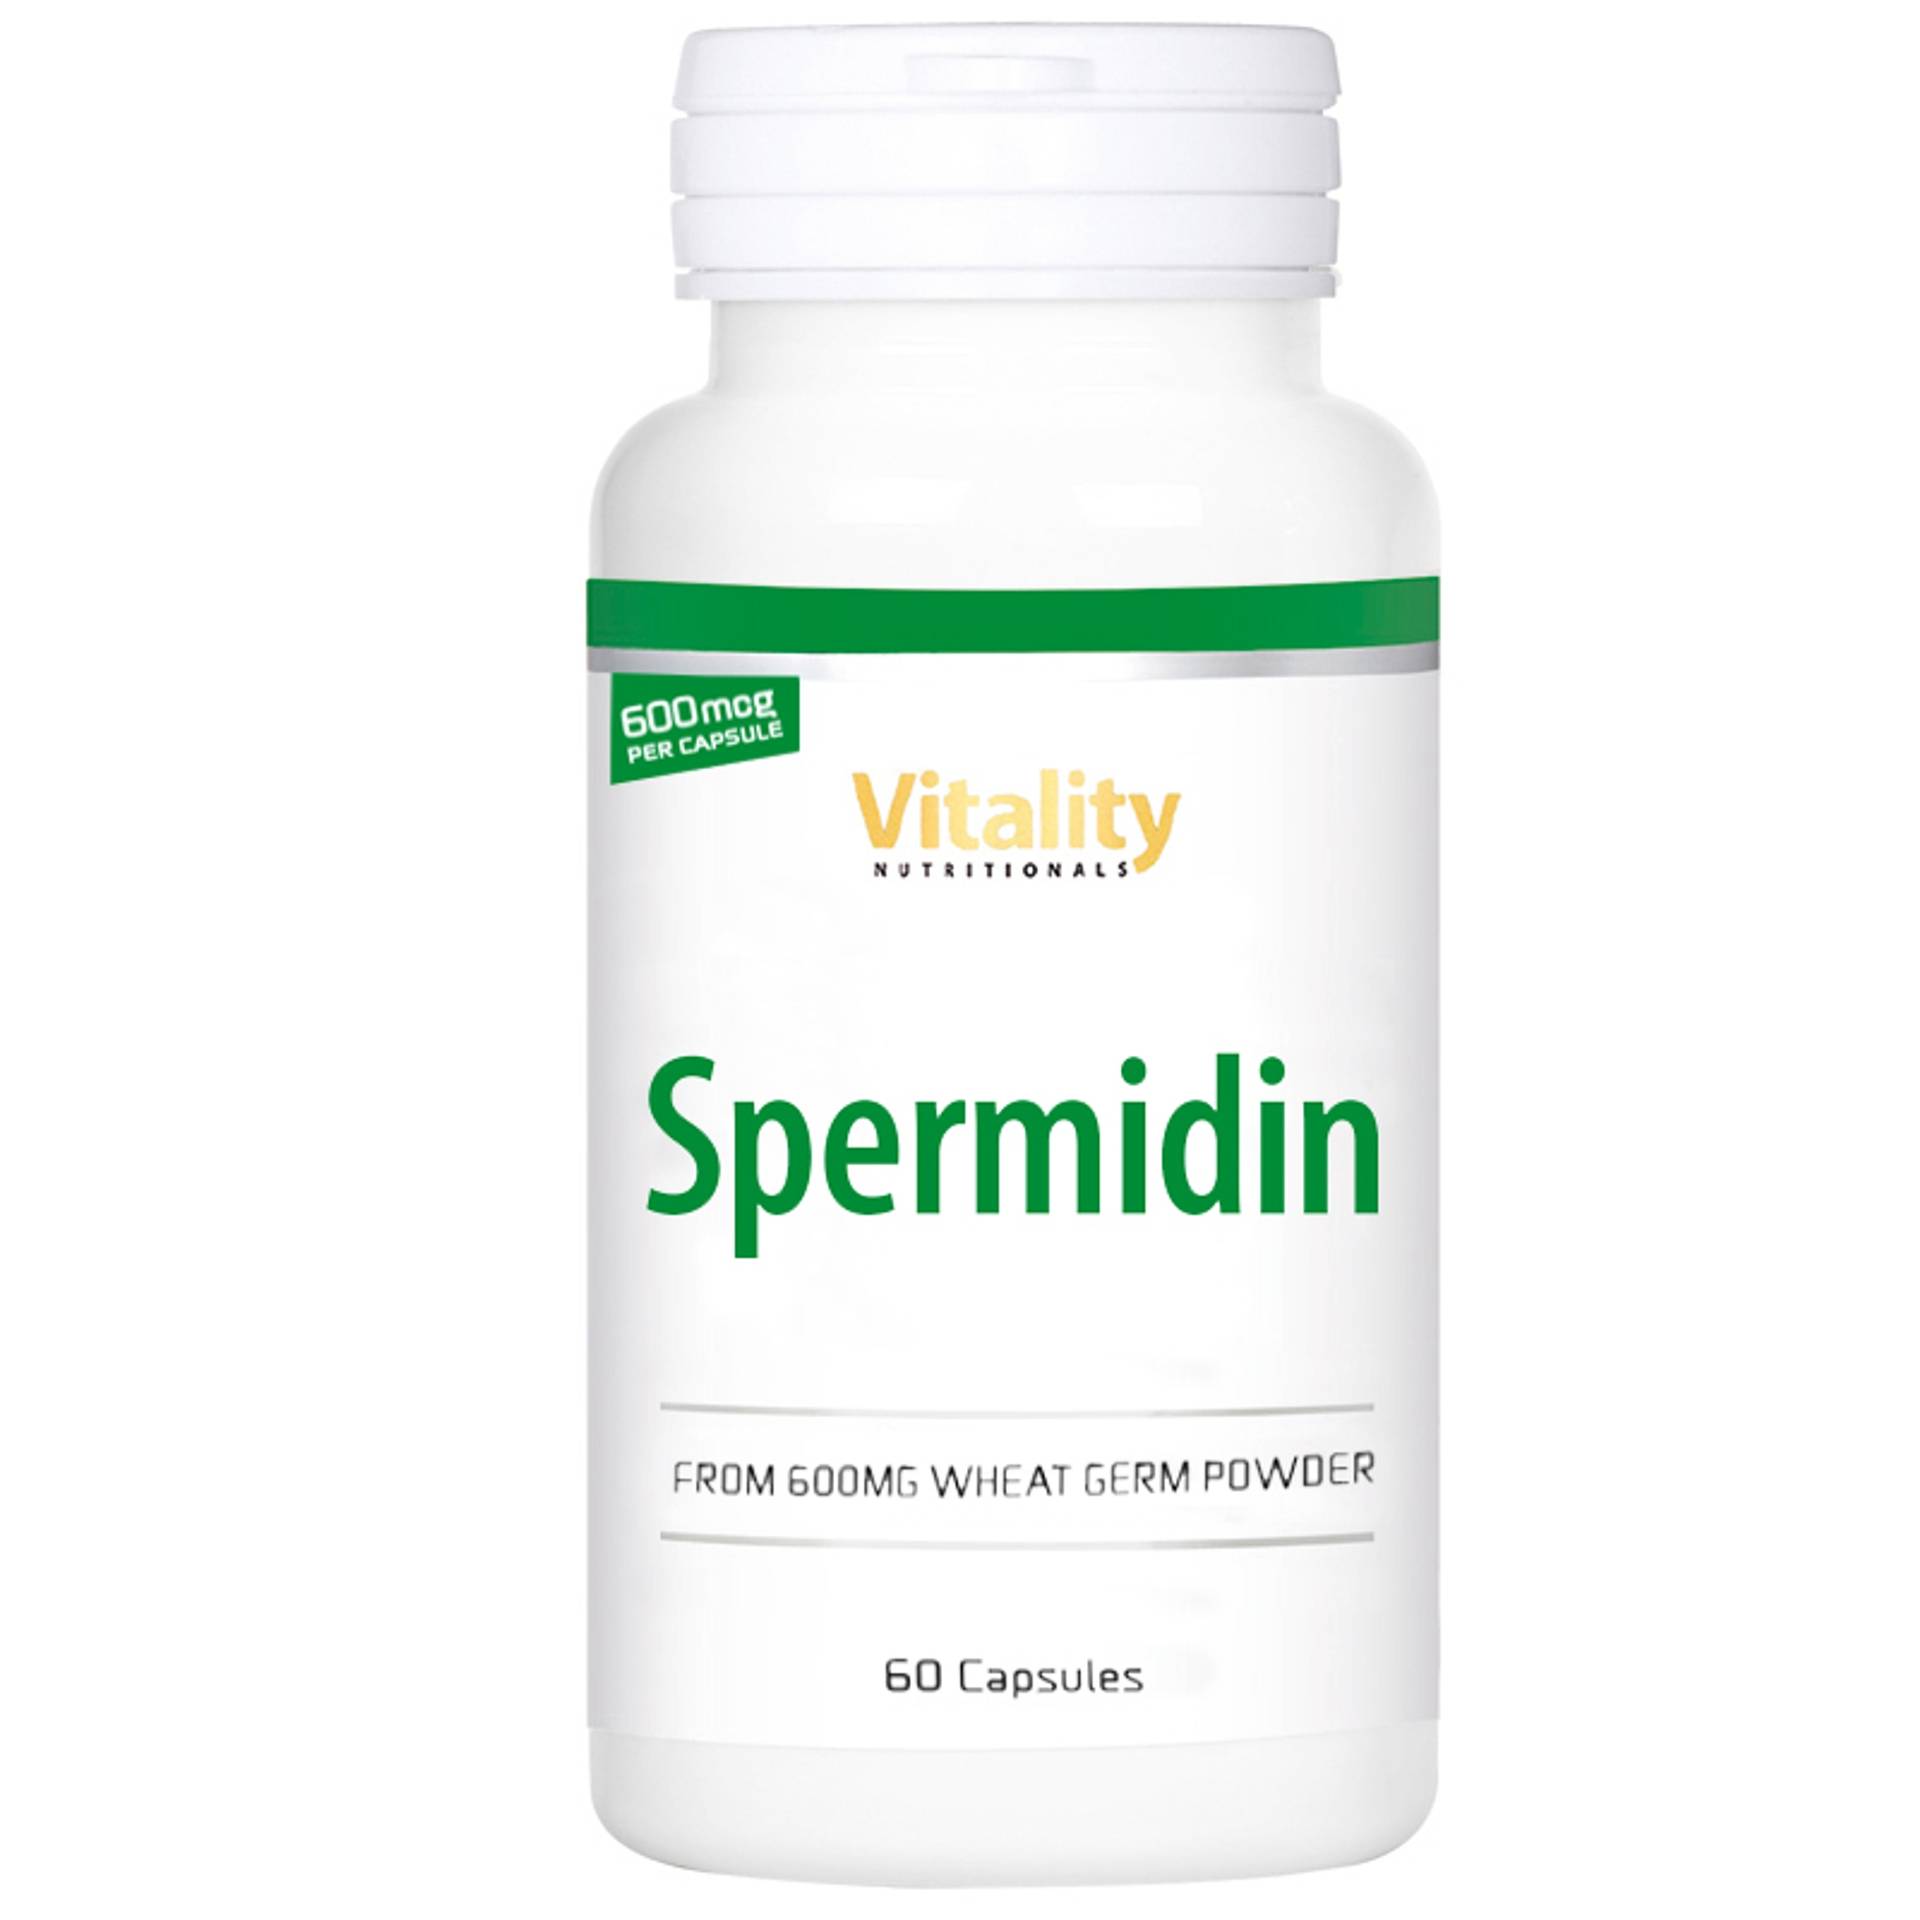 Vitality-Nutritionals-Spermidin-neue-Grosse_44g_60capsules_20210617.jpg